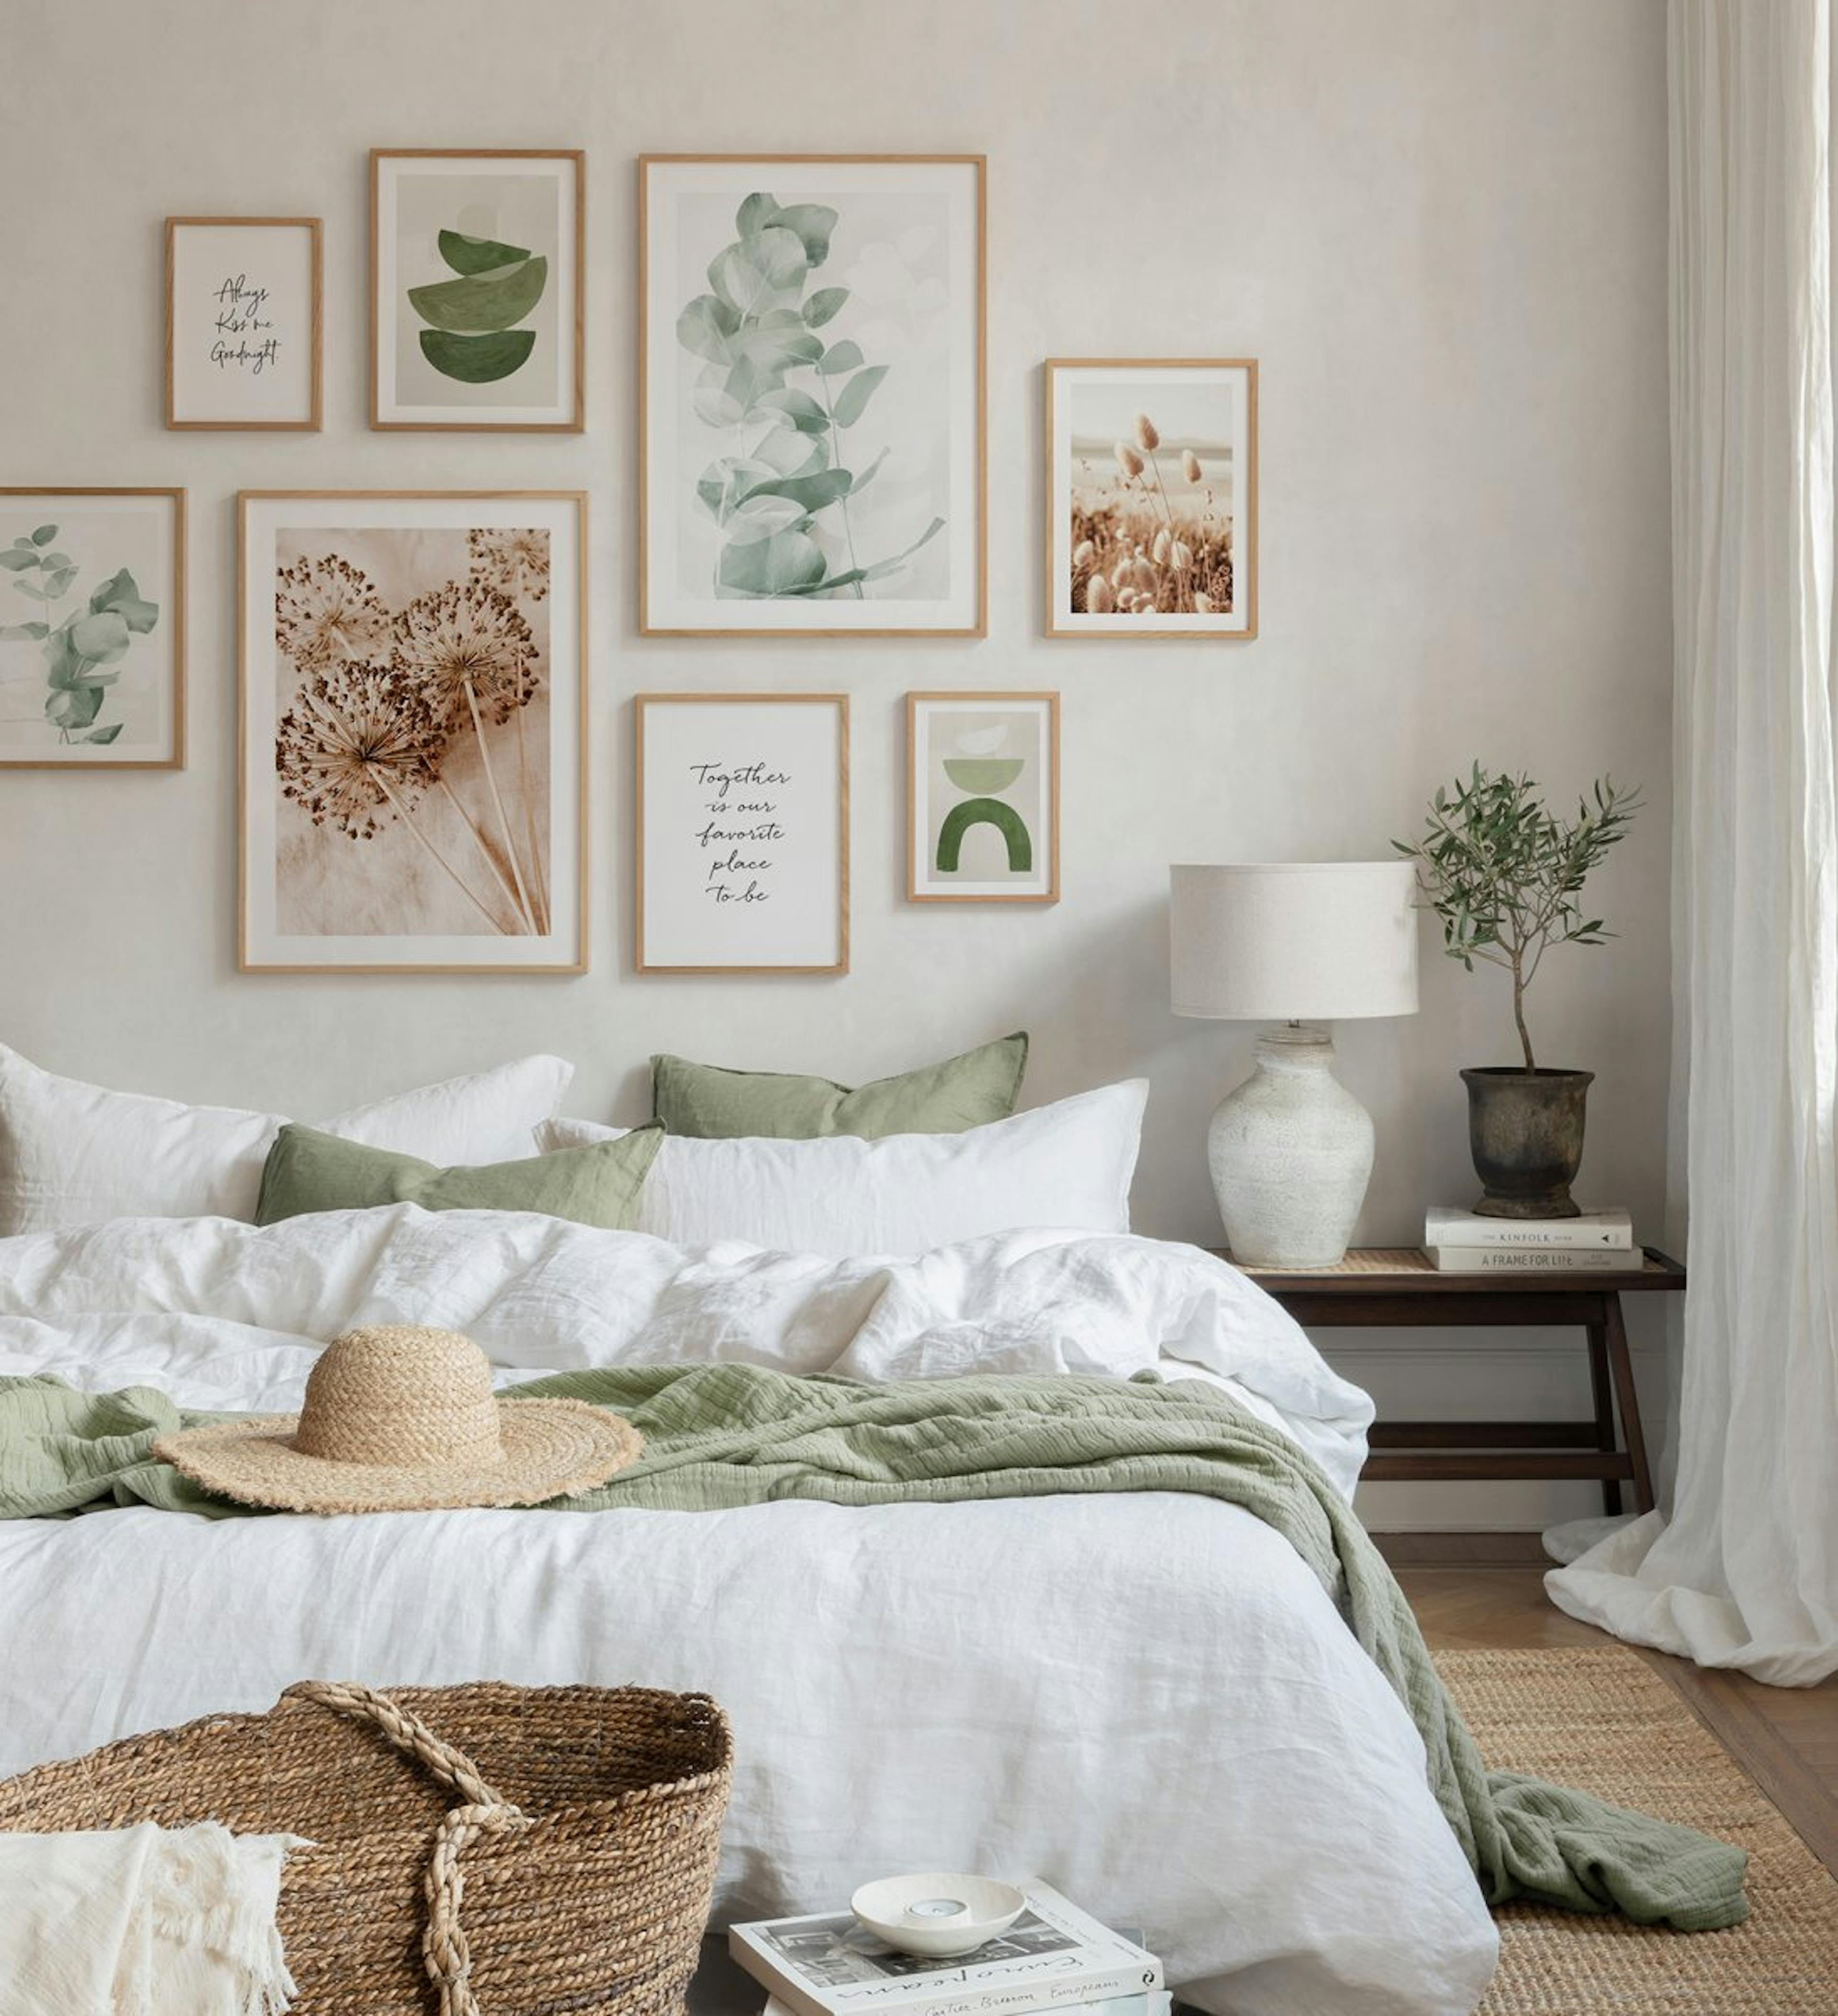 Botanische fotowand met natuurprints in beige en groene kleuren met eikenhouten lijsten voor de slaapkamer